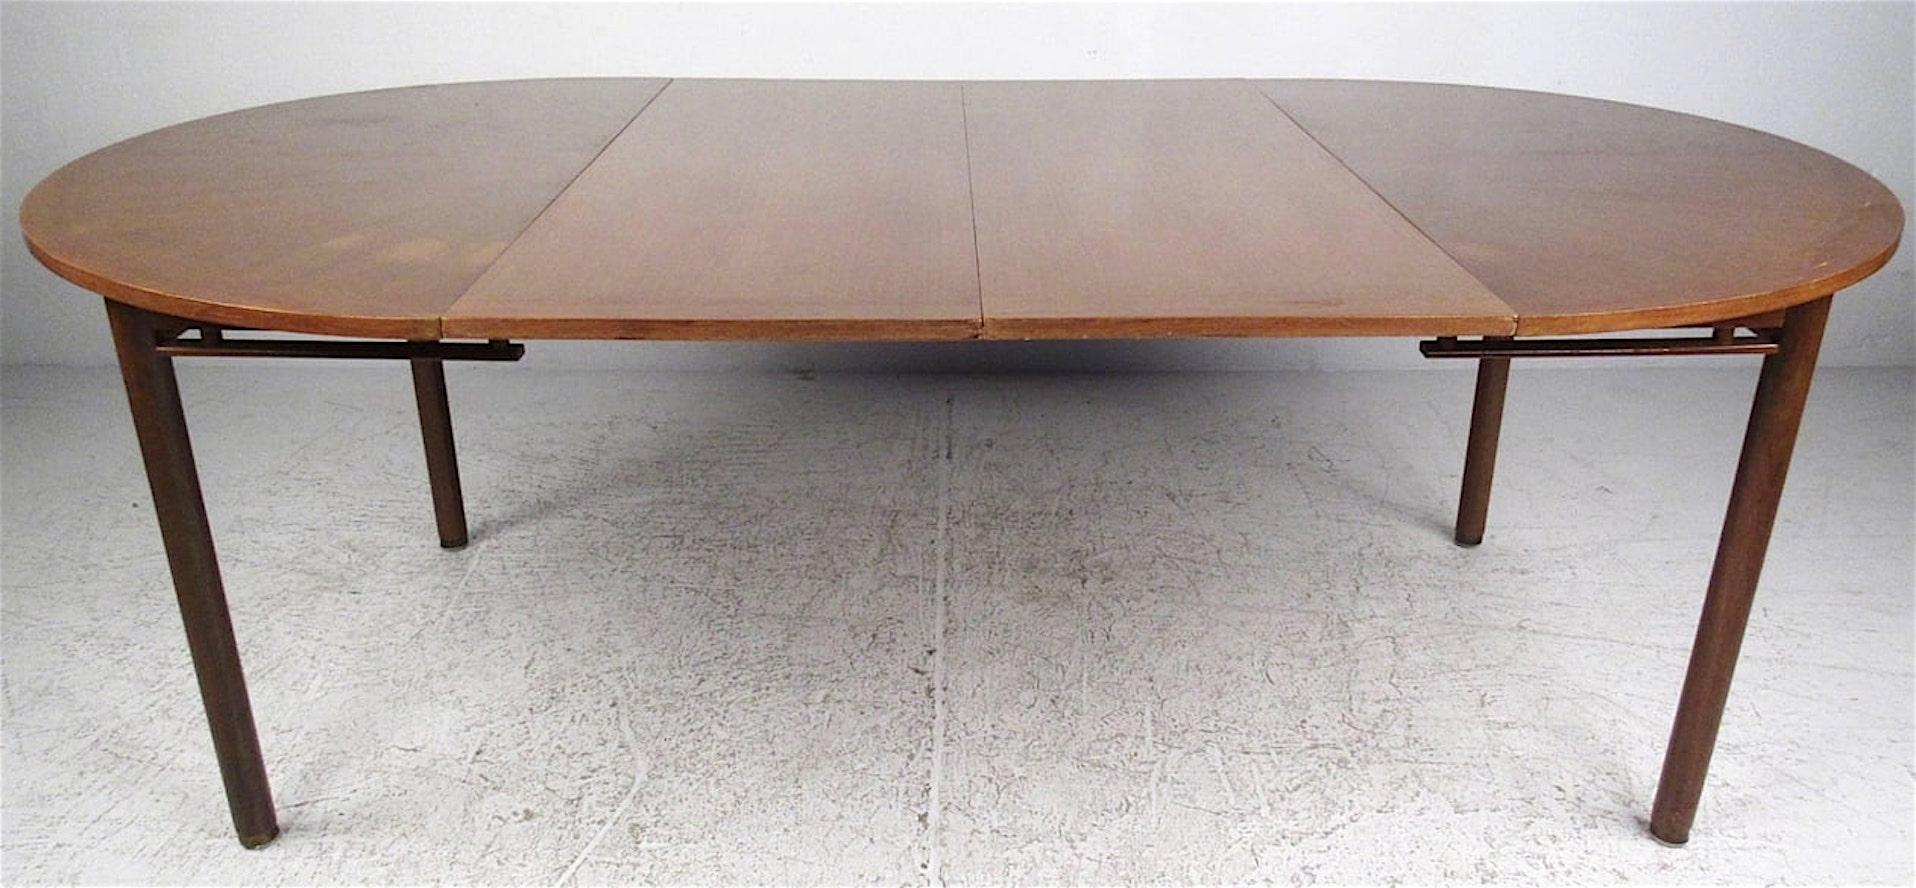 Cette table ronde de salle à manger moderne du milieu du siècle est dotée d'un plateau en placage de marqueterie rayonnant et de deux allonges qui permettent d'allonger la longueur jusqu'à 7 pieds.
Chaque feuille mesure 18